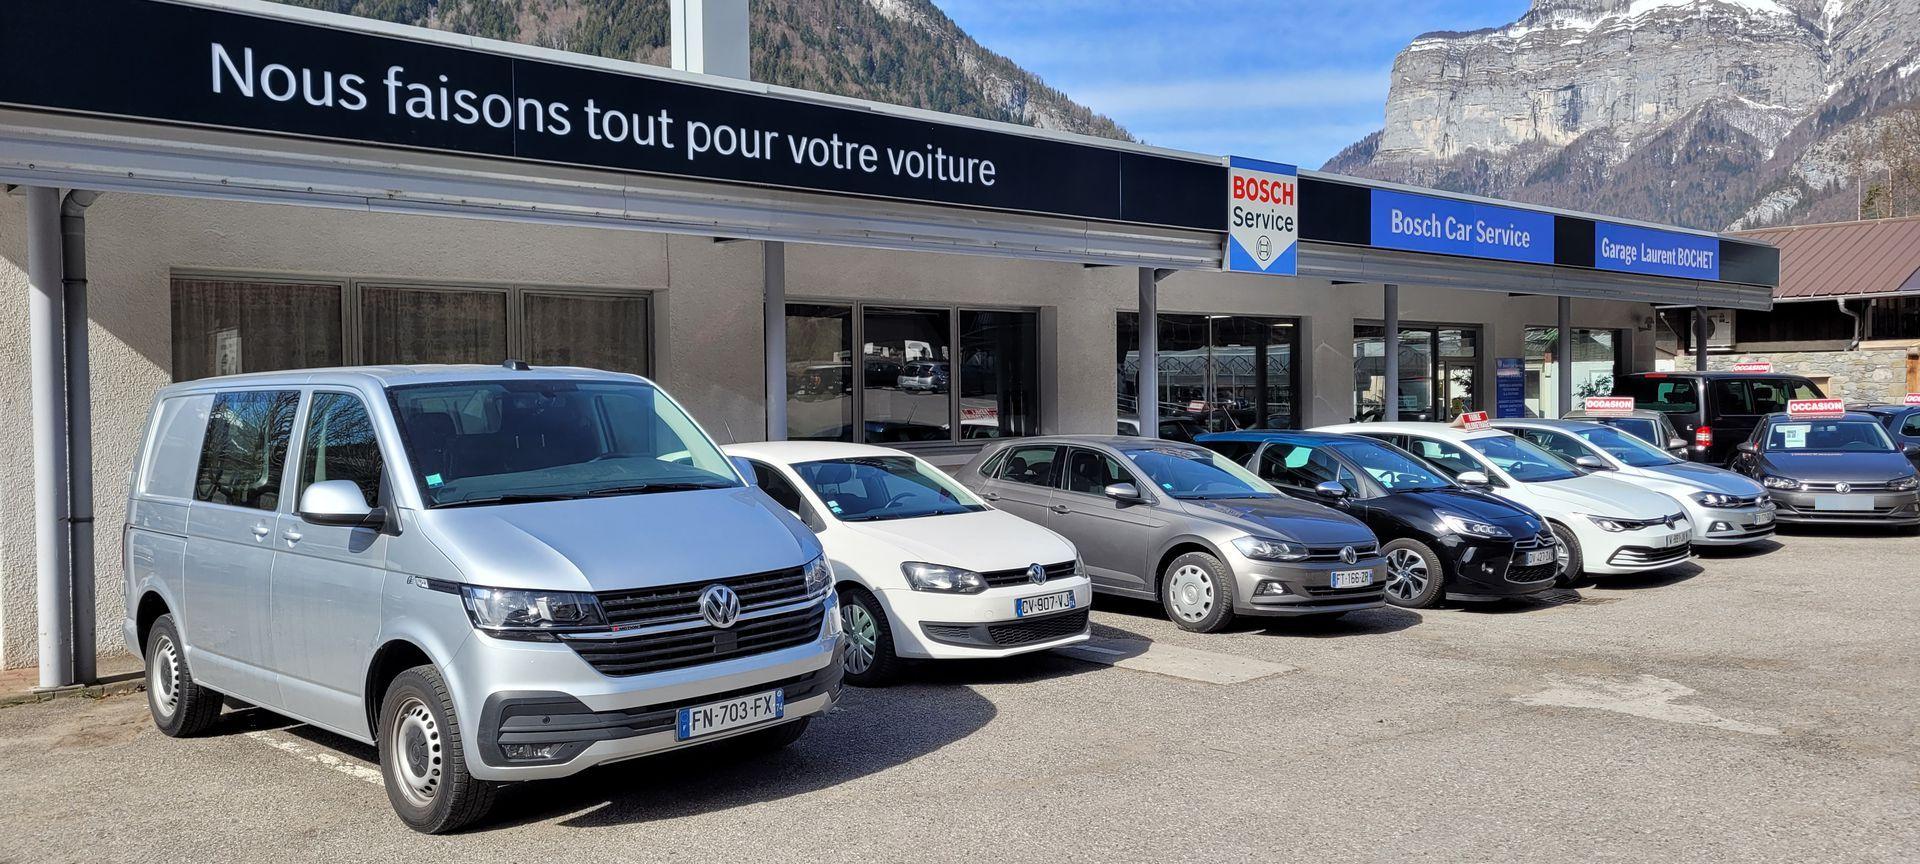 Garage laurent bochet spécialiste Volkswagen, Audi Skoda SEAT CUPRA